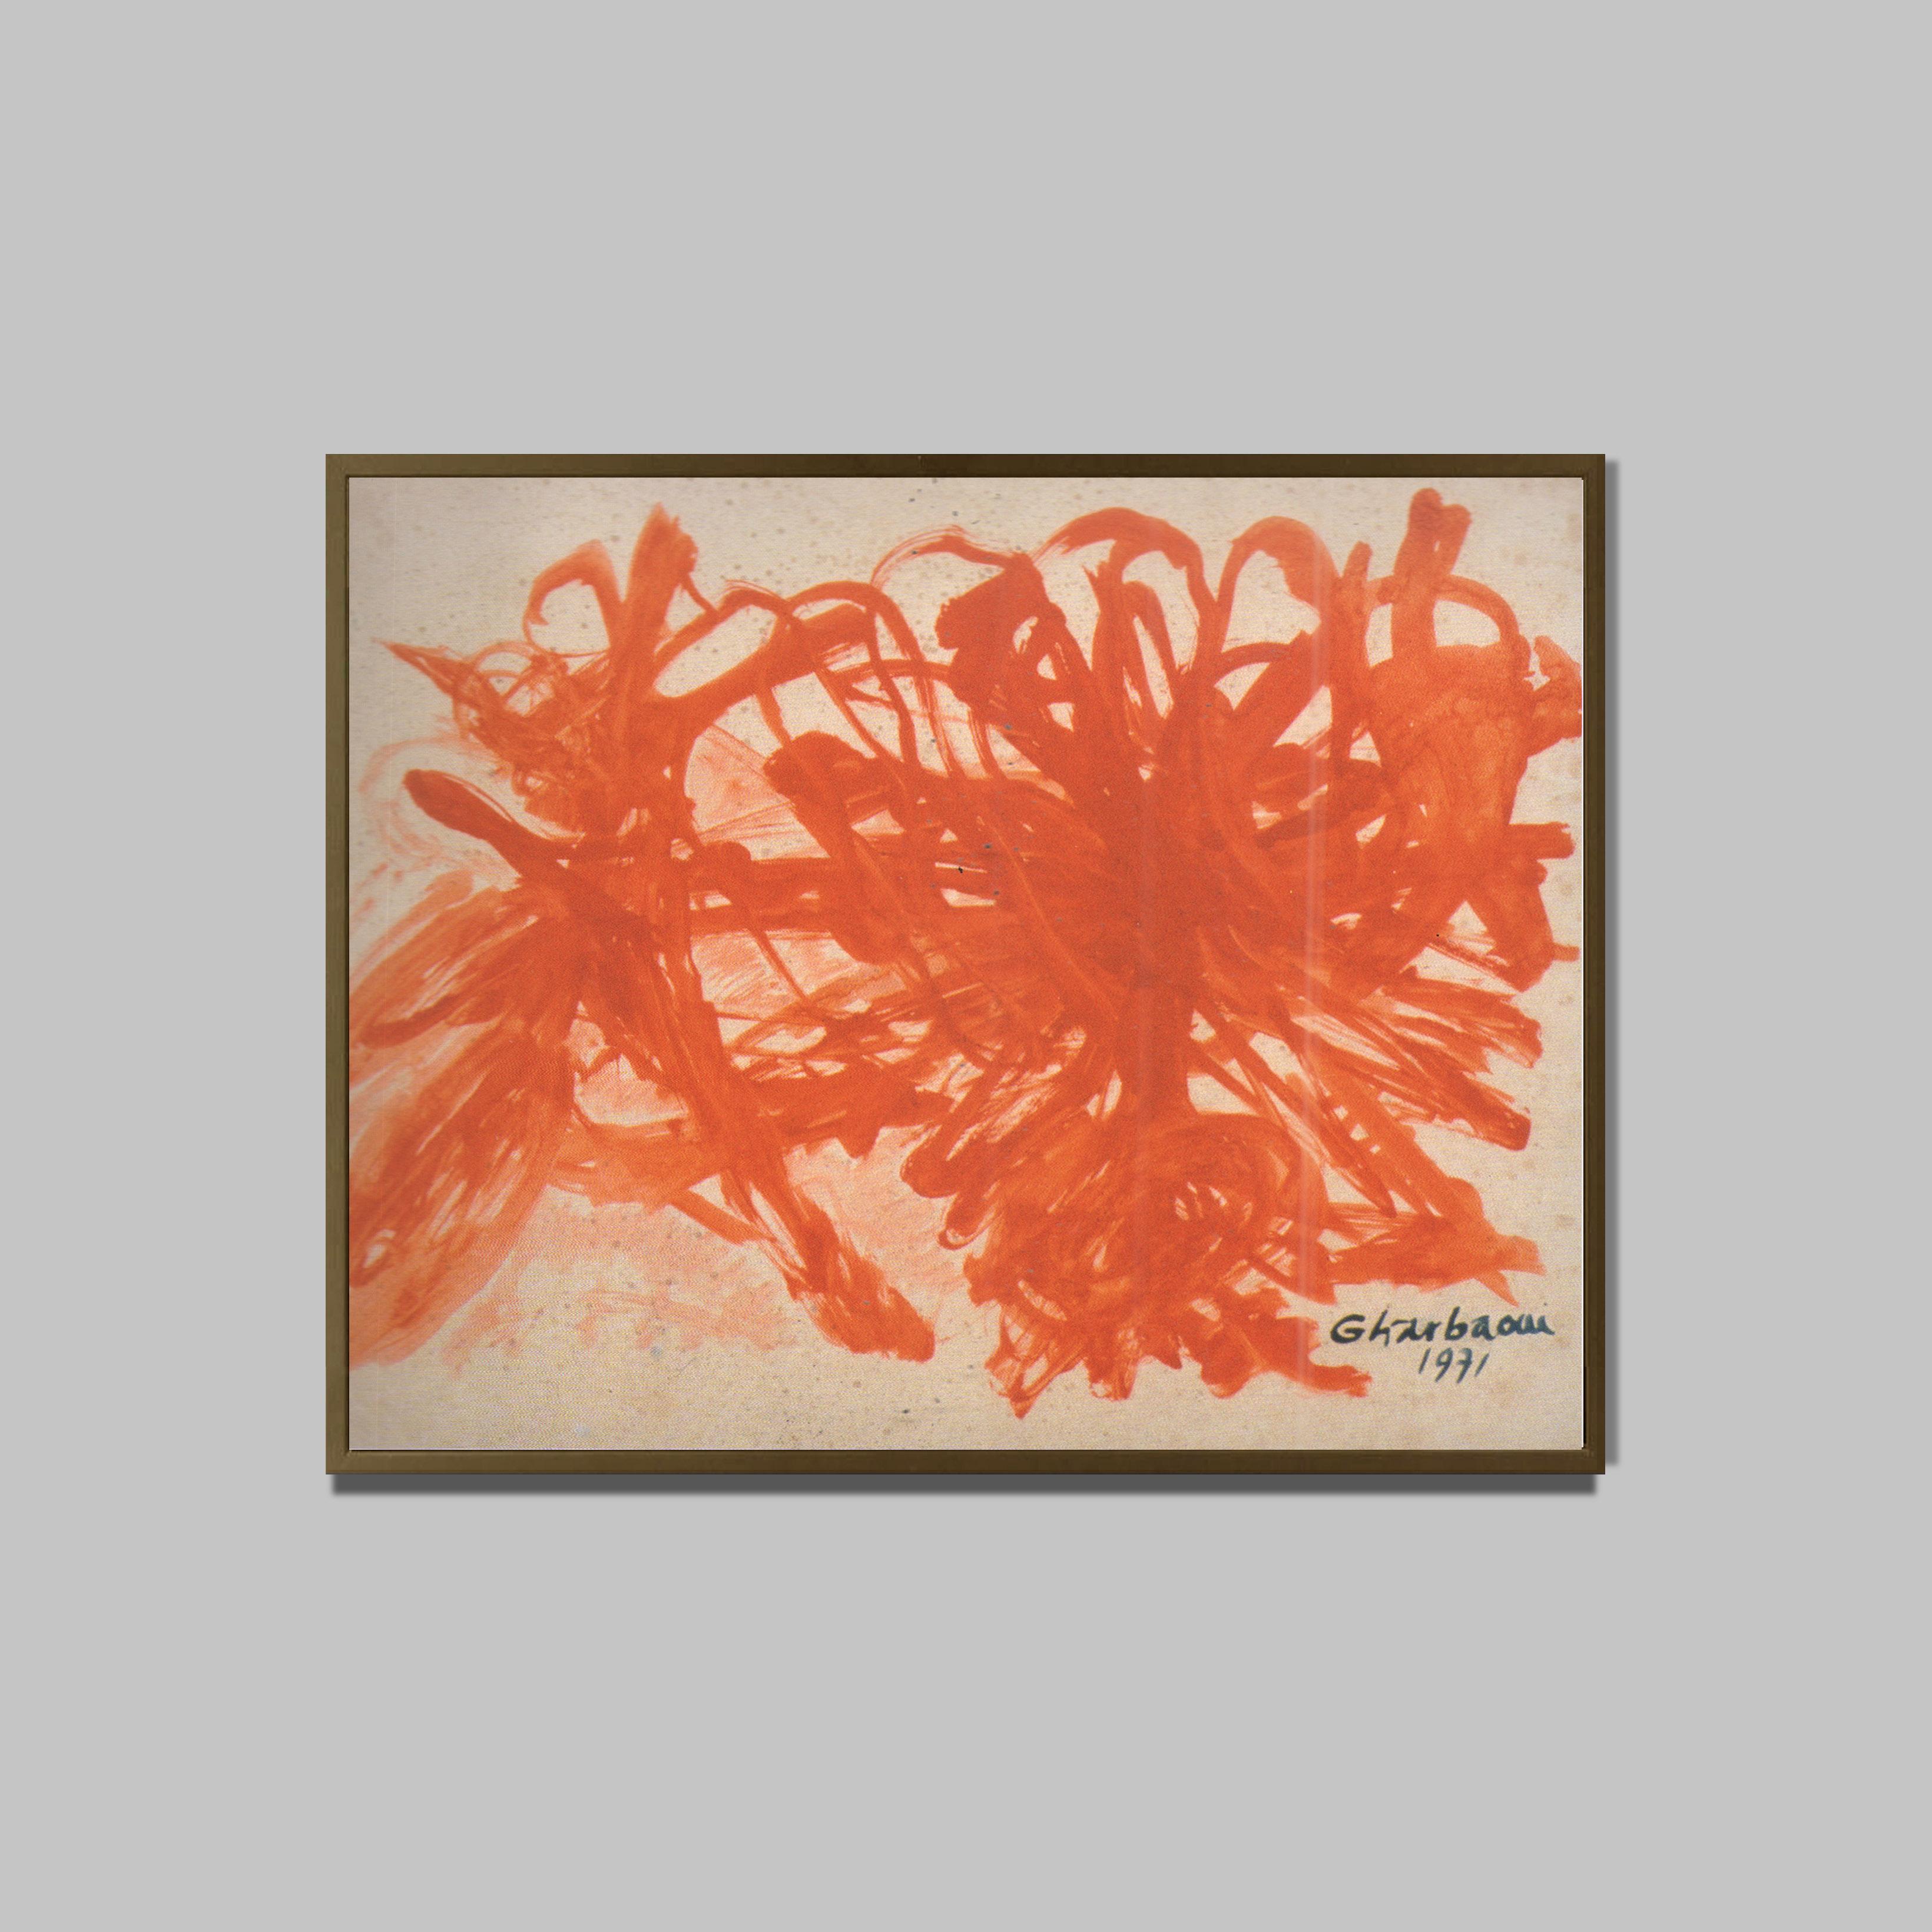 Sans titre, 1971
Gouache sur papier
104 x 75 cm